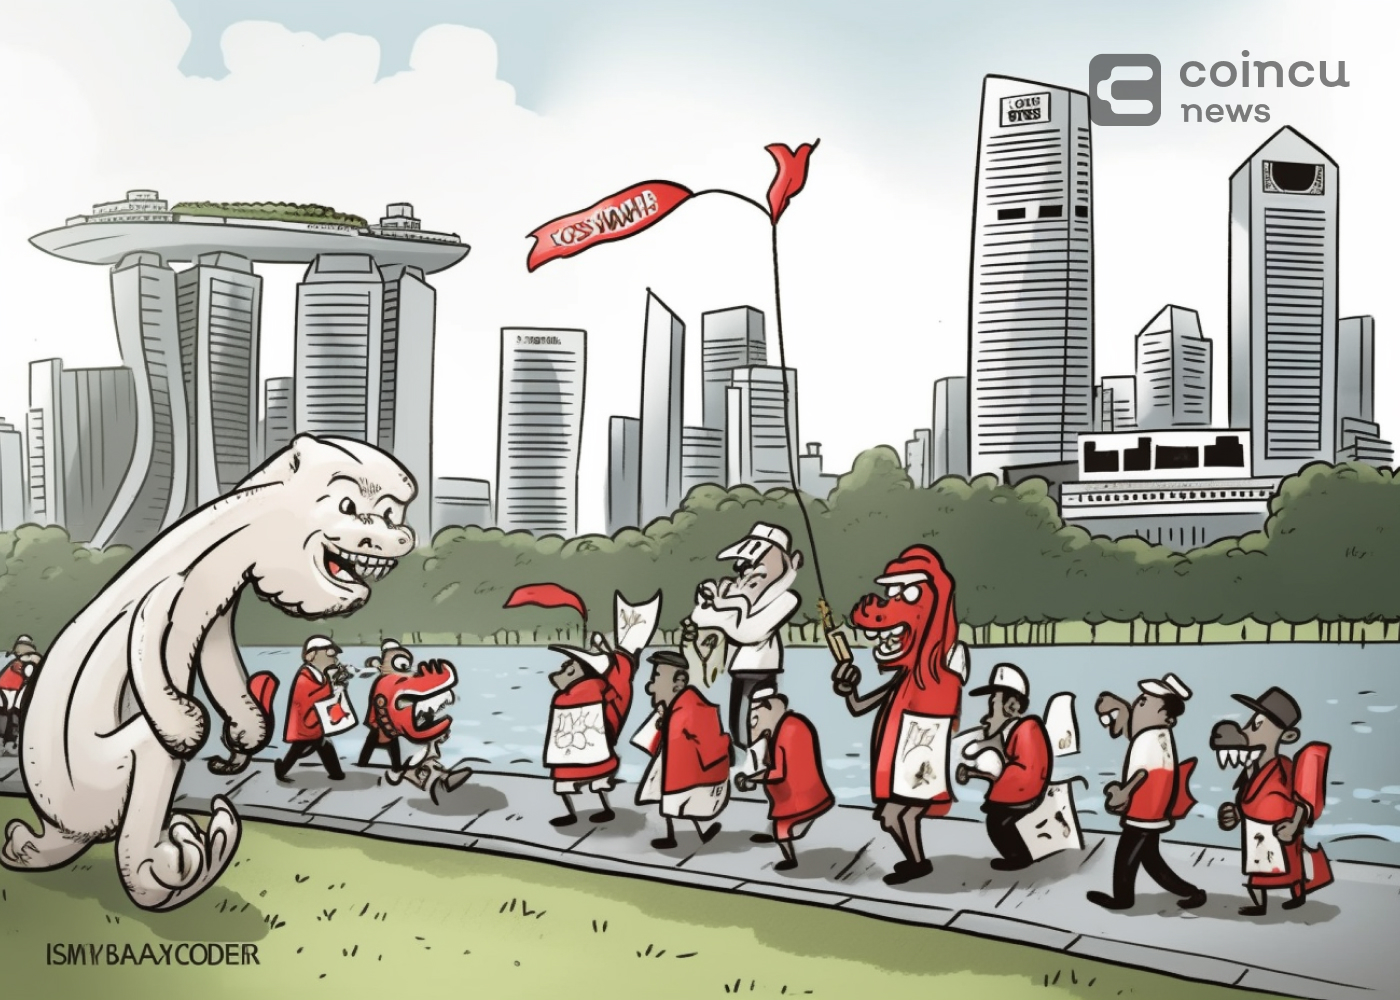 Emissores de stablecoin em Cingapura tomam medidas positivas sob novas regulamentações